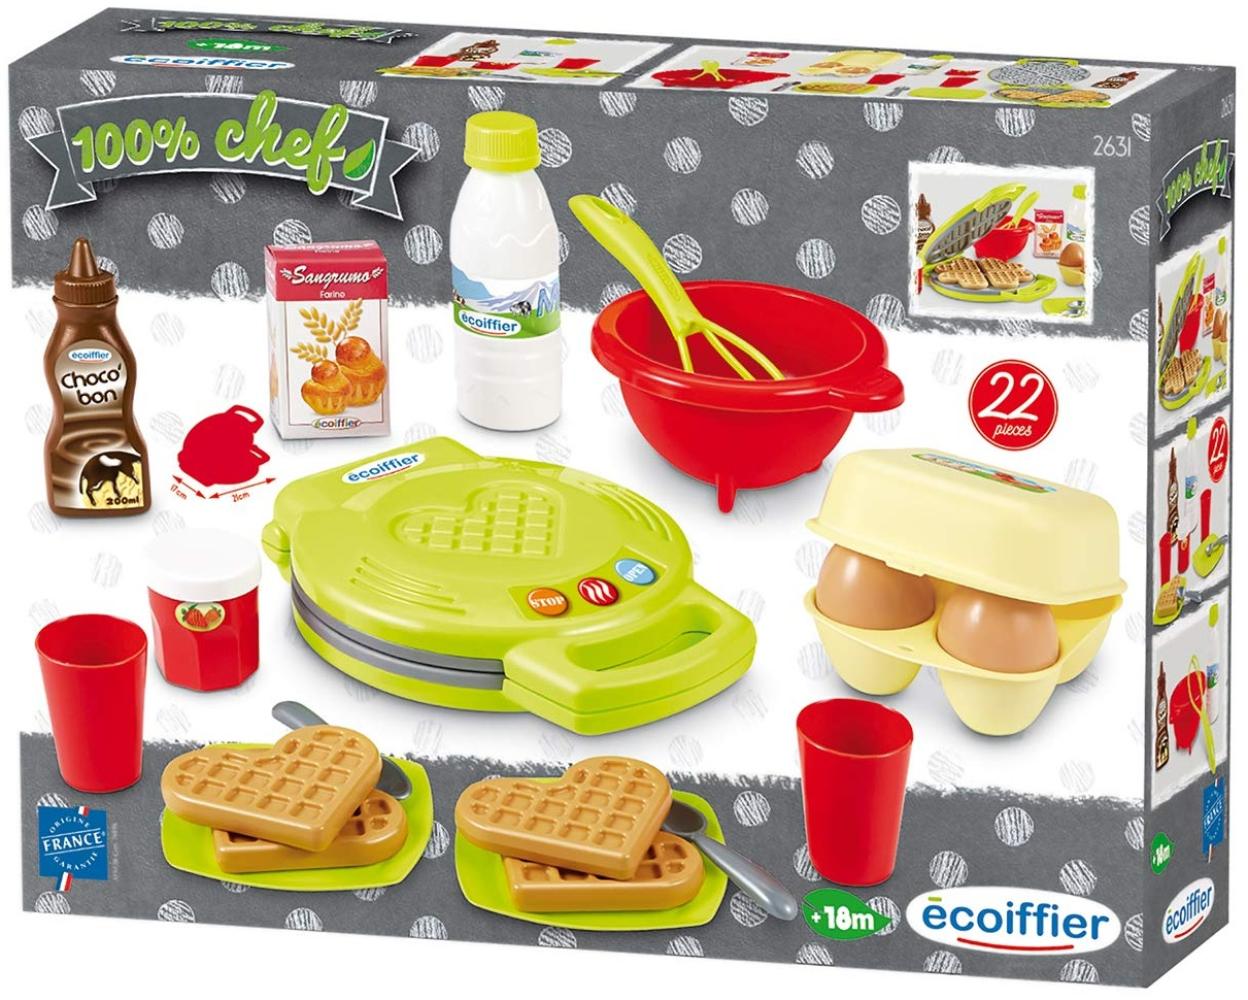 Ecoiffier – Waffeleisen für Kinder – 22-teiliges Backset mit Spiellebensmitteln, ideales Zubehör für Spielküchen, Spielwaffeleisen, für Kinder ab 18 Monaten Bild 1